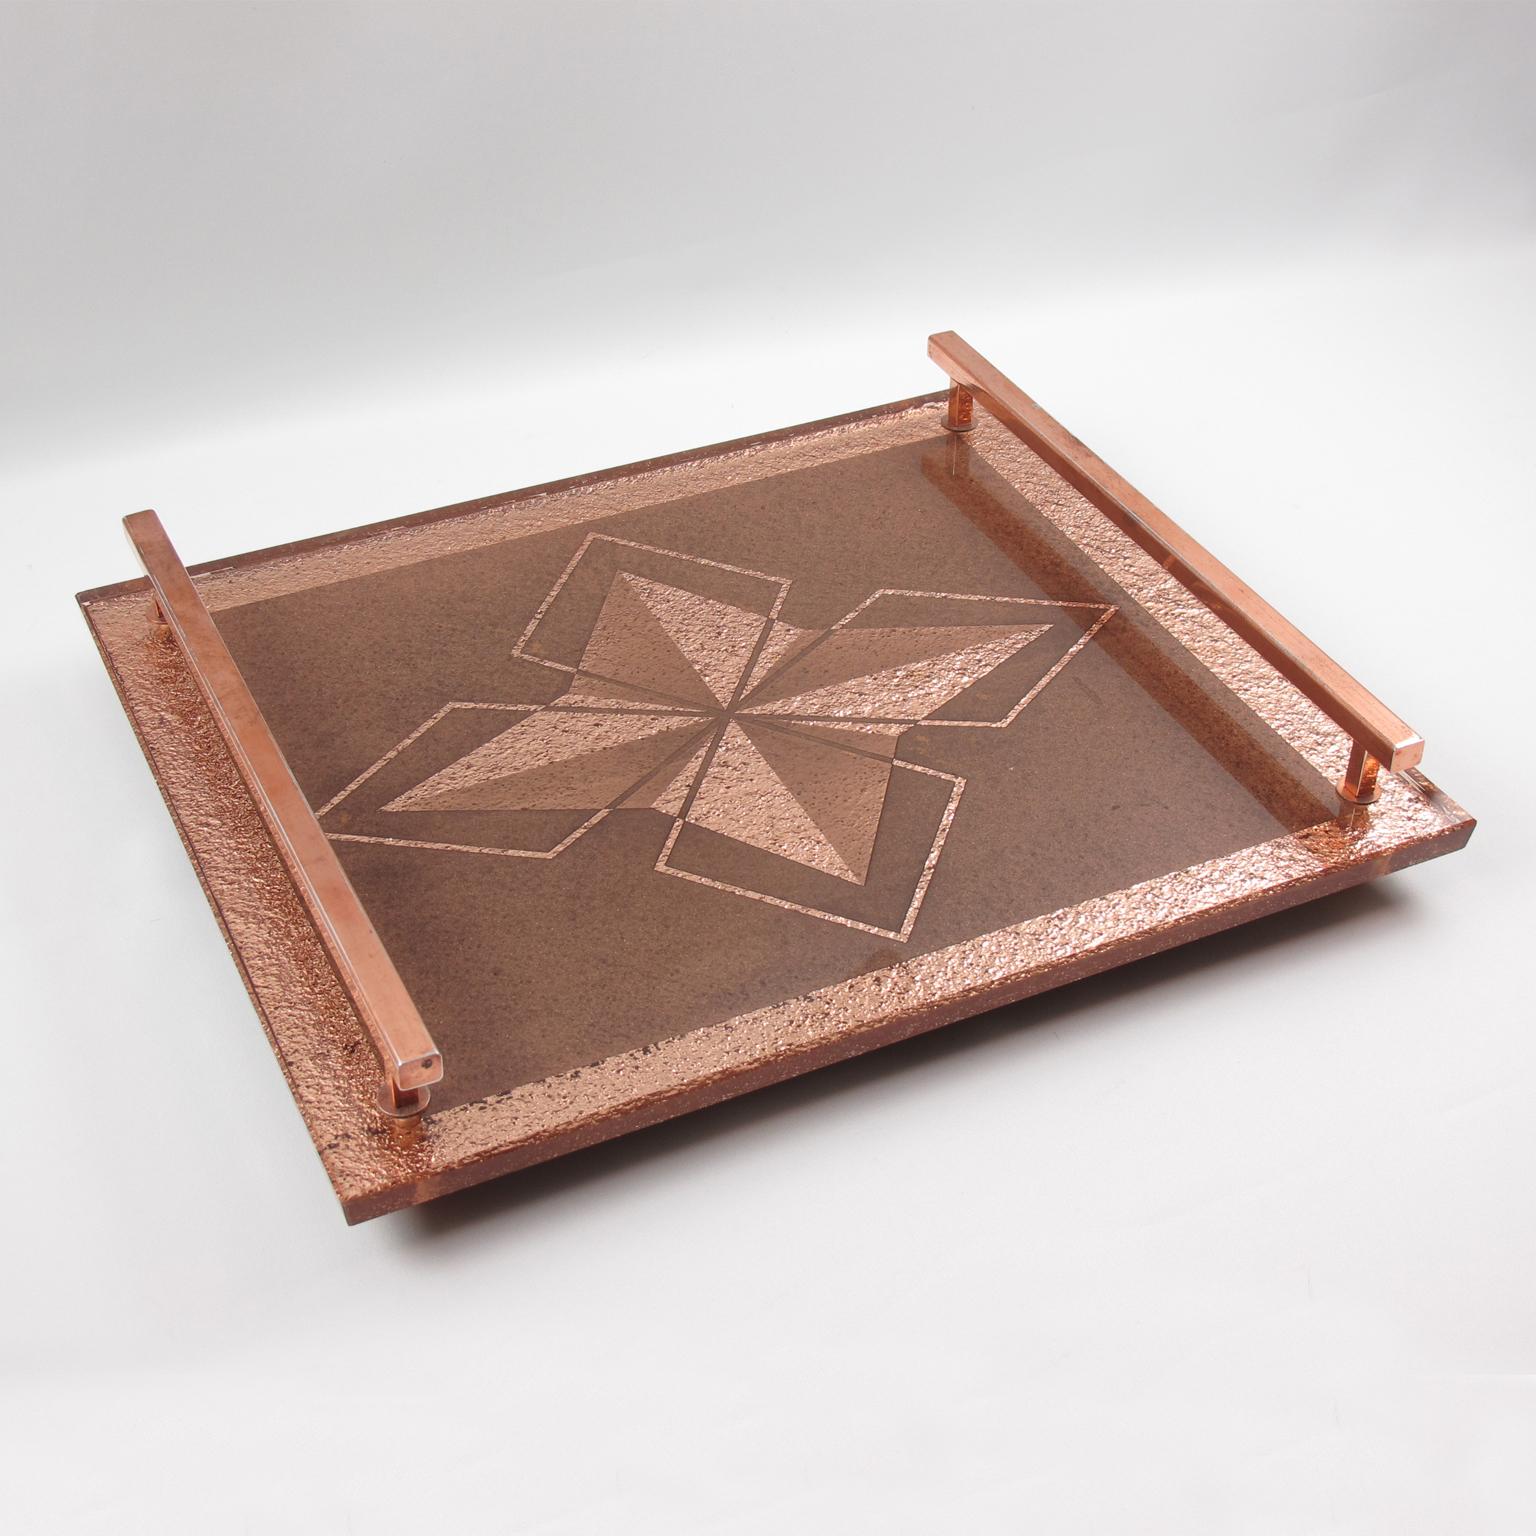 Dieses hübsche französische Art-Déco-Tablett aus kupferfarbenem Metall und pfirsichfarbenem Spiegel verfügt über eine dicke verspiegelte Glasplatte in Kupfer- oder Rosa-Pfirsich-Farbe mit umgekehrter geometrischer Ätzung und Sterndesign. Das Tablett